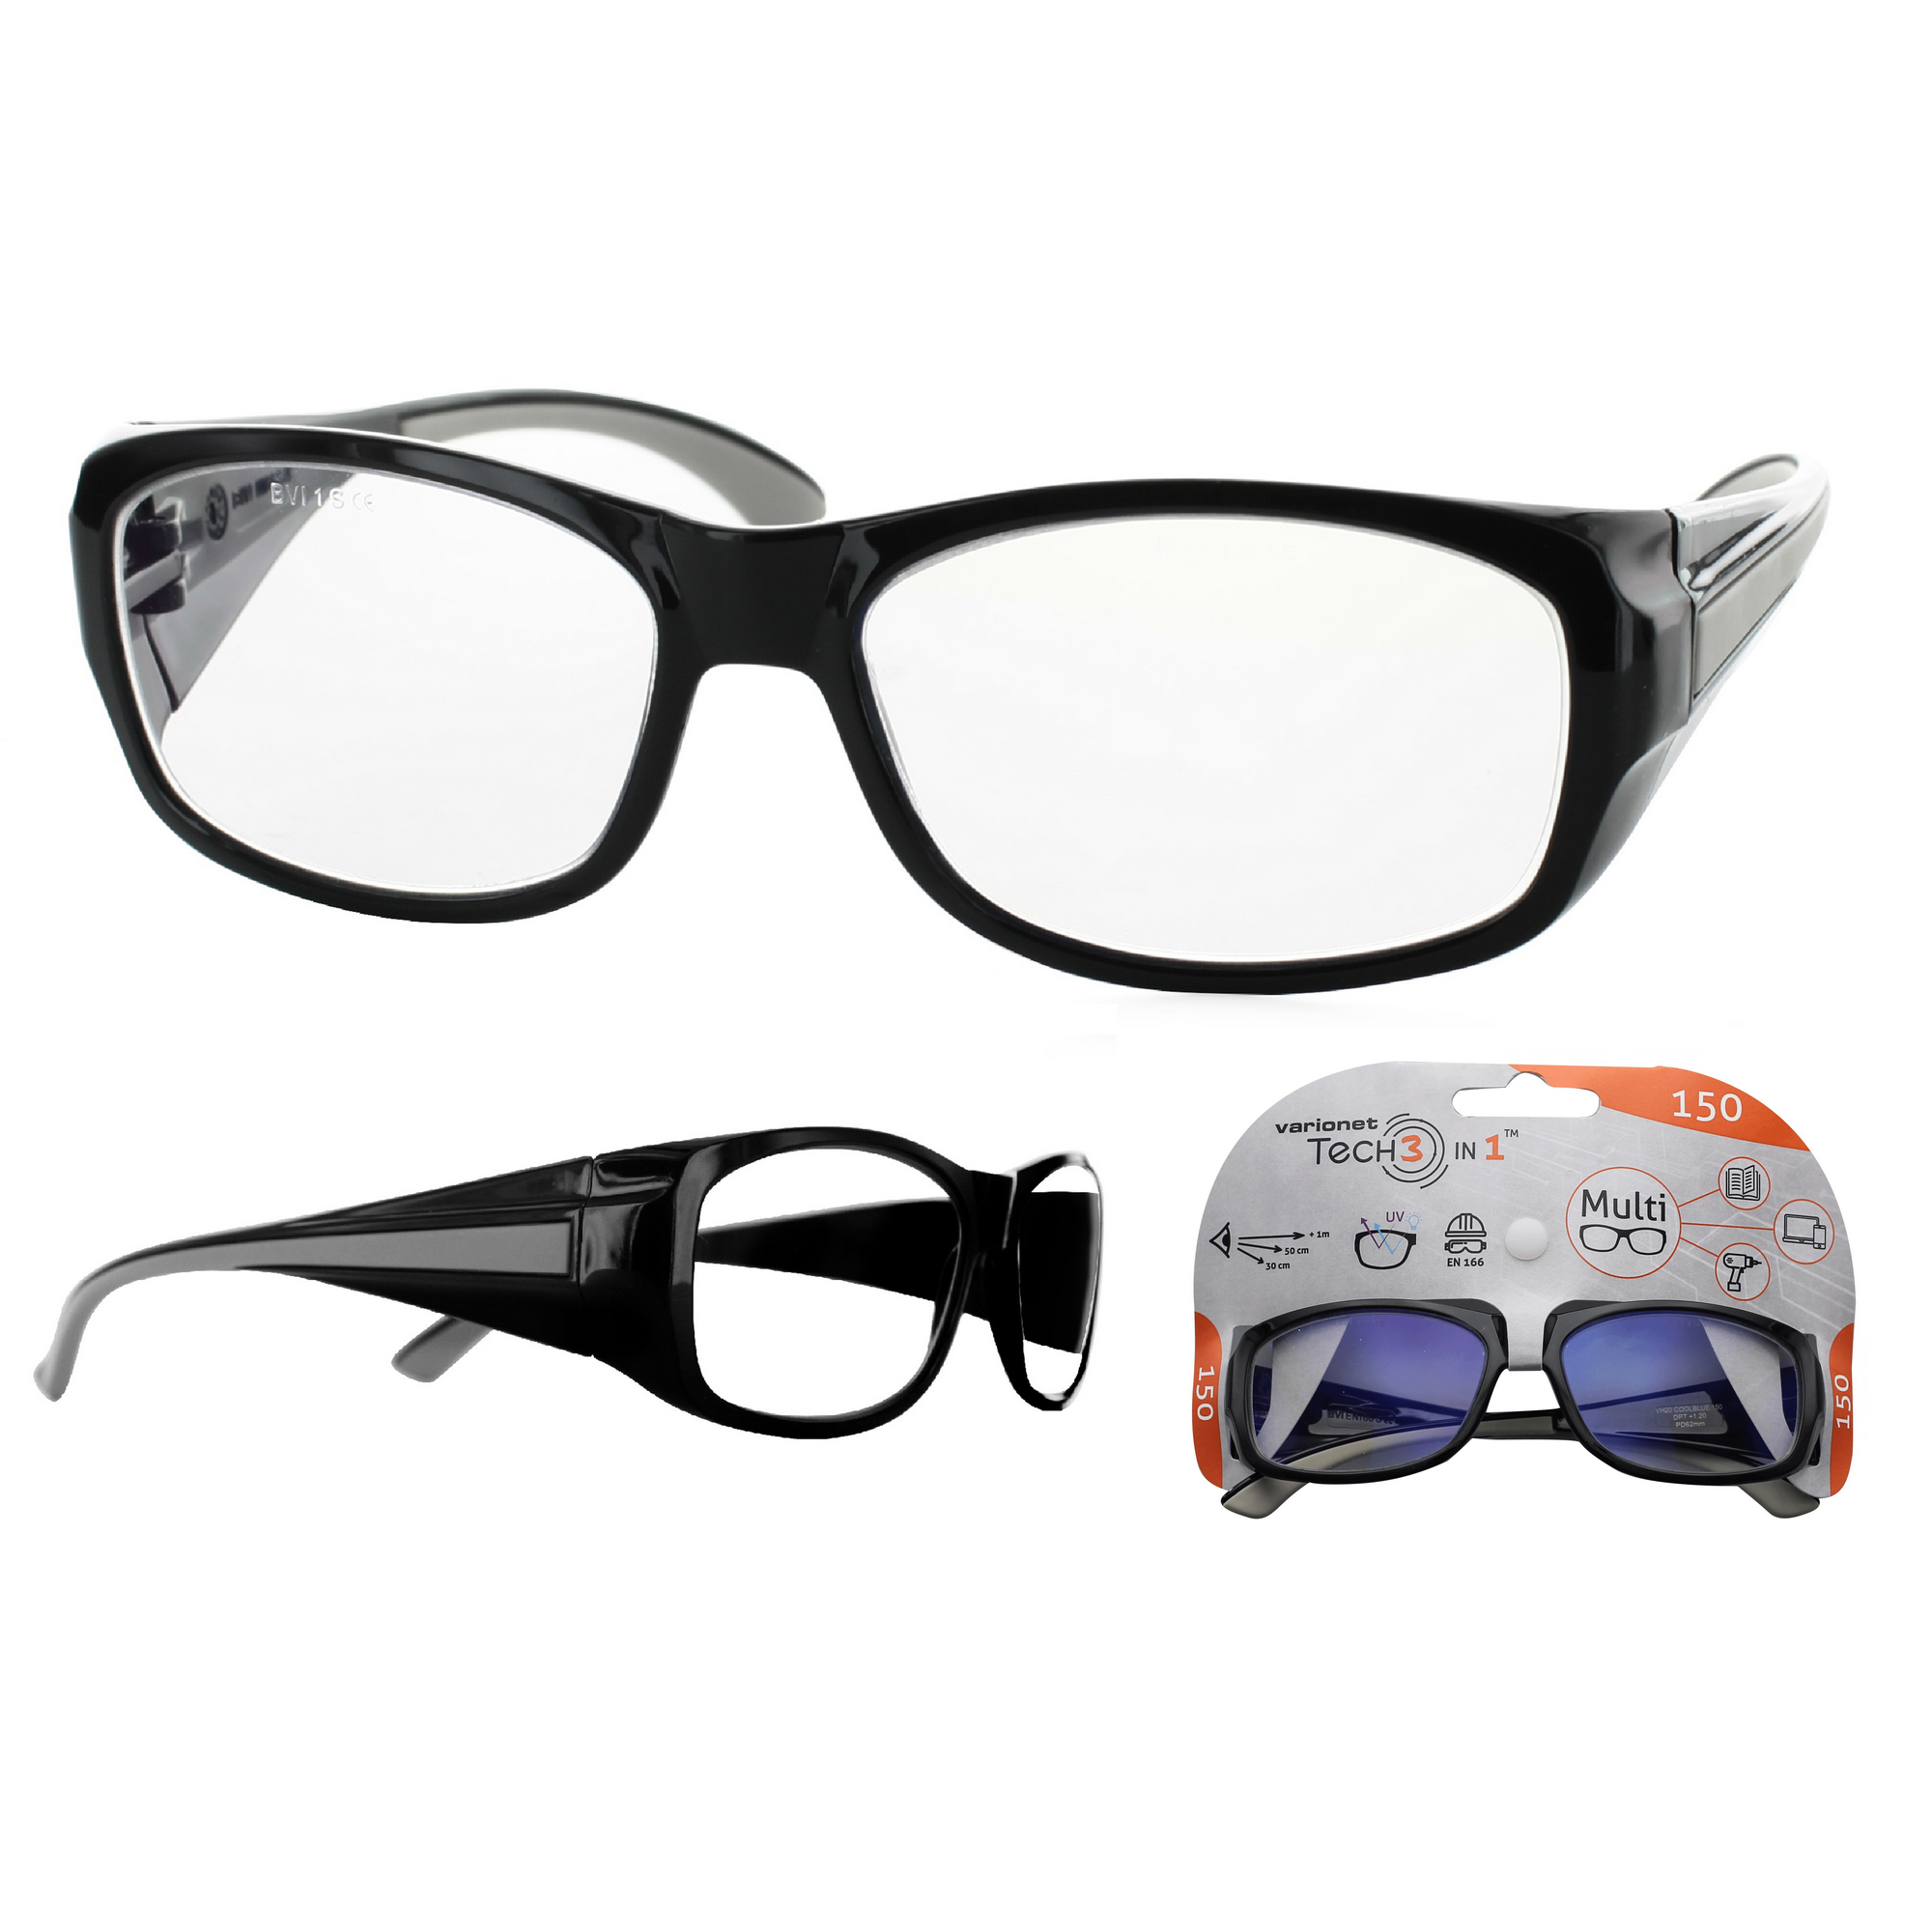 Multidistanz-Schutzbrille 'Tech 3in1 150' schwarz + 1,50 Dioptrien + product picture